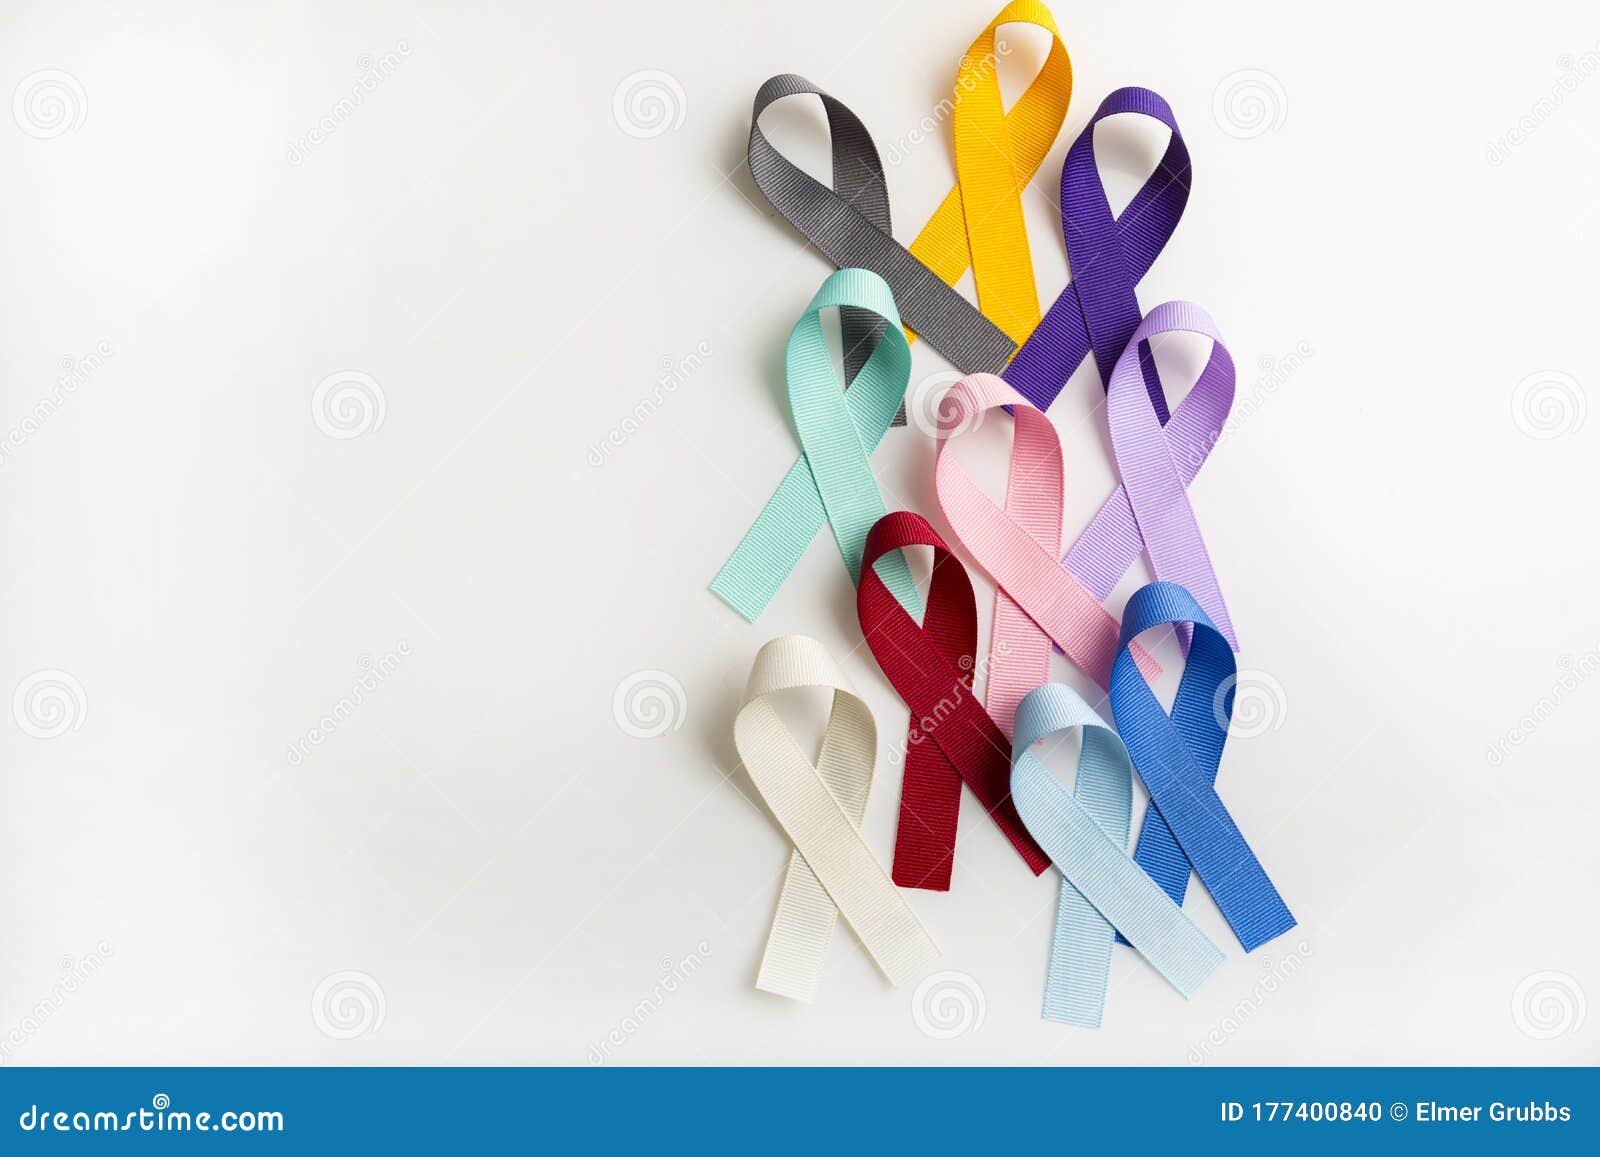 Nastri Colorati Di Cancro Come Simboli Sanitari Per Tutti I Tipi Di Cancro  Fotografia Stock - Immagine di arco, concetto: 177400840